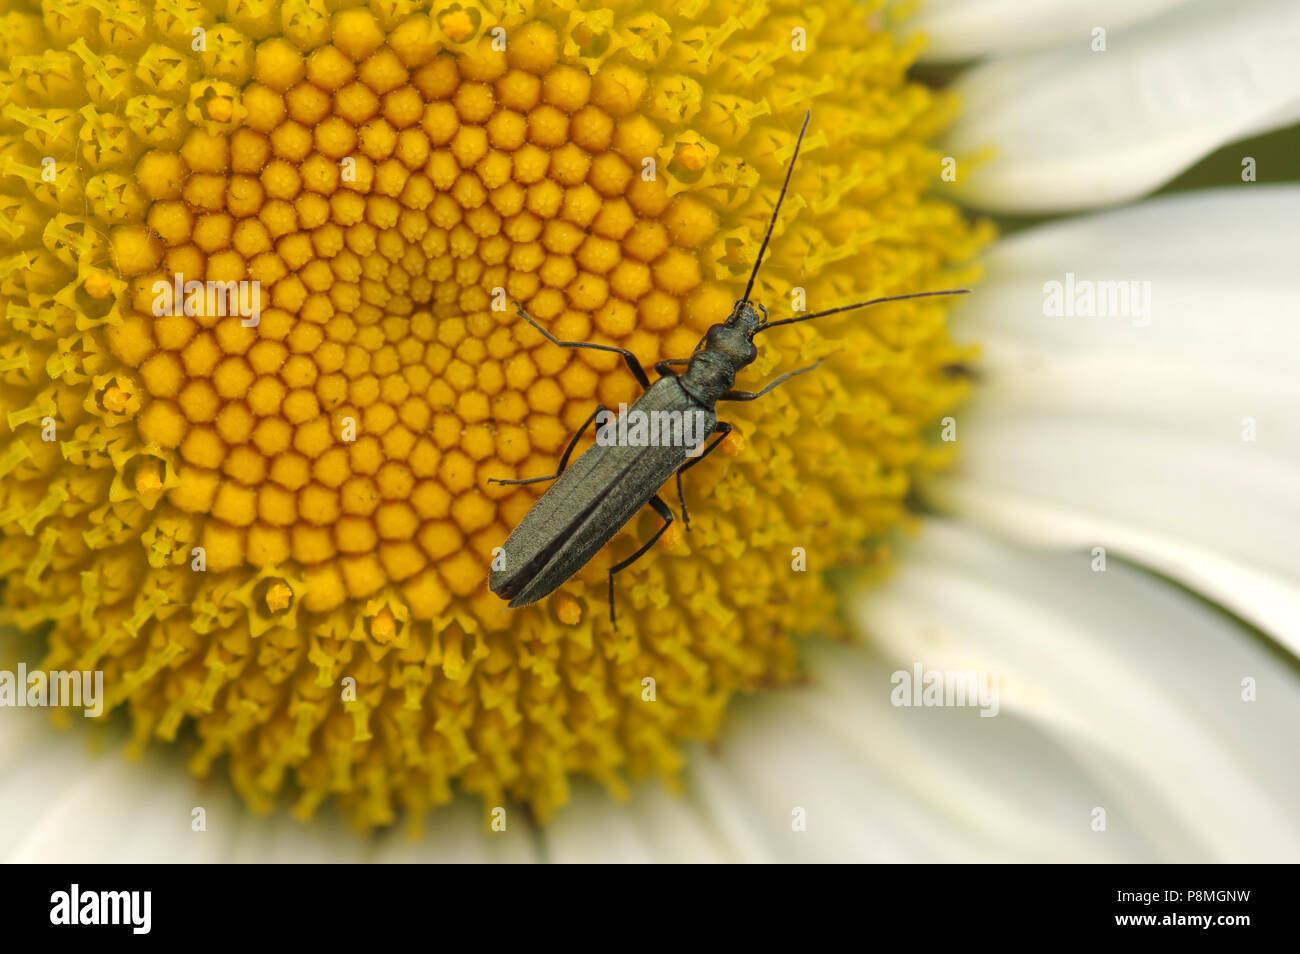 Hembra patas gruesas flor escarabajo (Oedemera nobilis) en ojo de buey Daisy Foto de stock